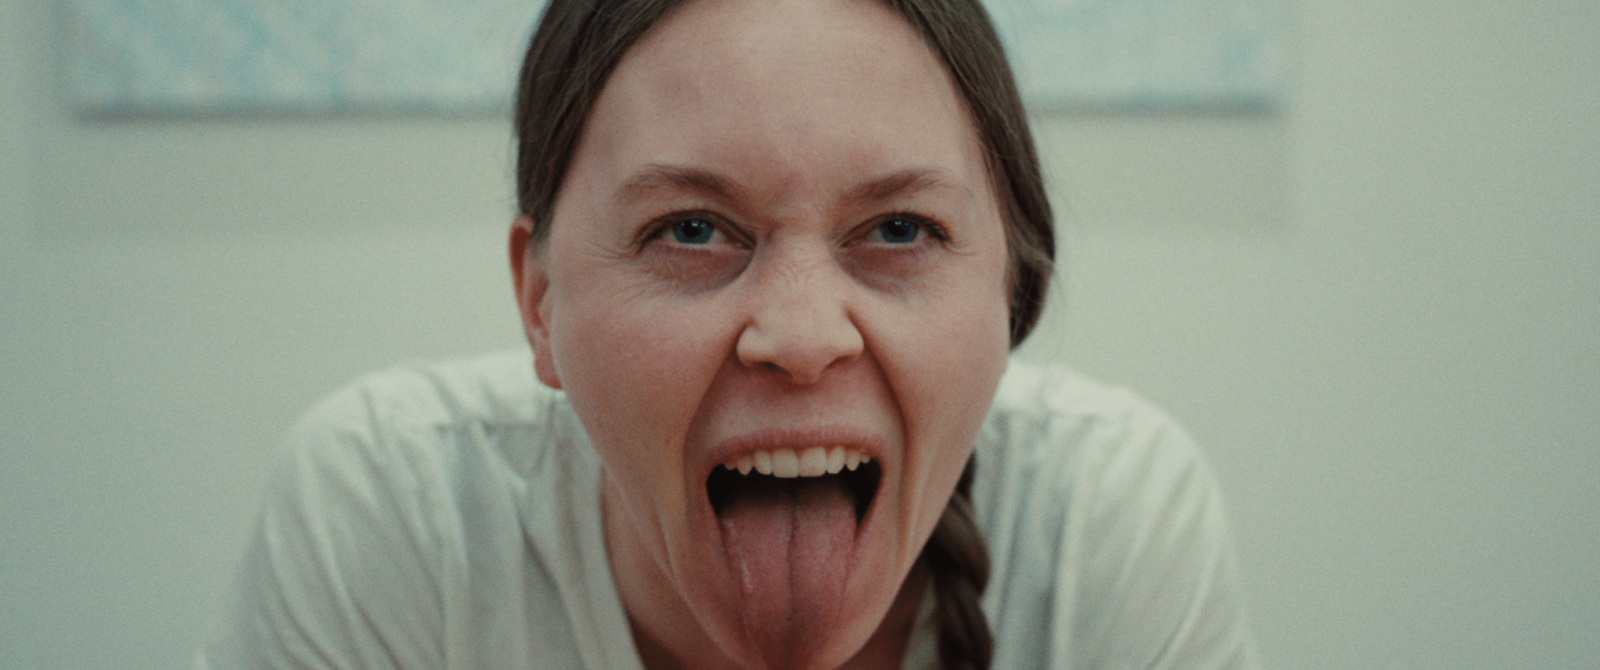 Extrait du film BAND par Álfrún Örnólfsdóttir avec une femme portant un tee-shirt blanc, avec le regard porté sur la caméra et qui tire la langue.